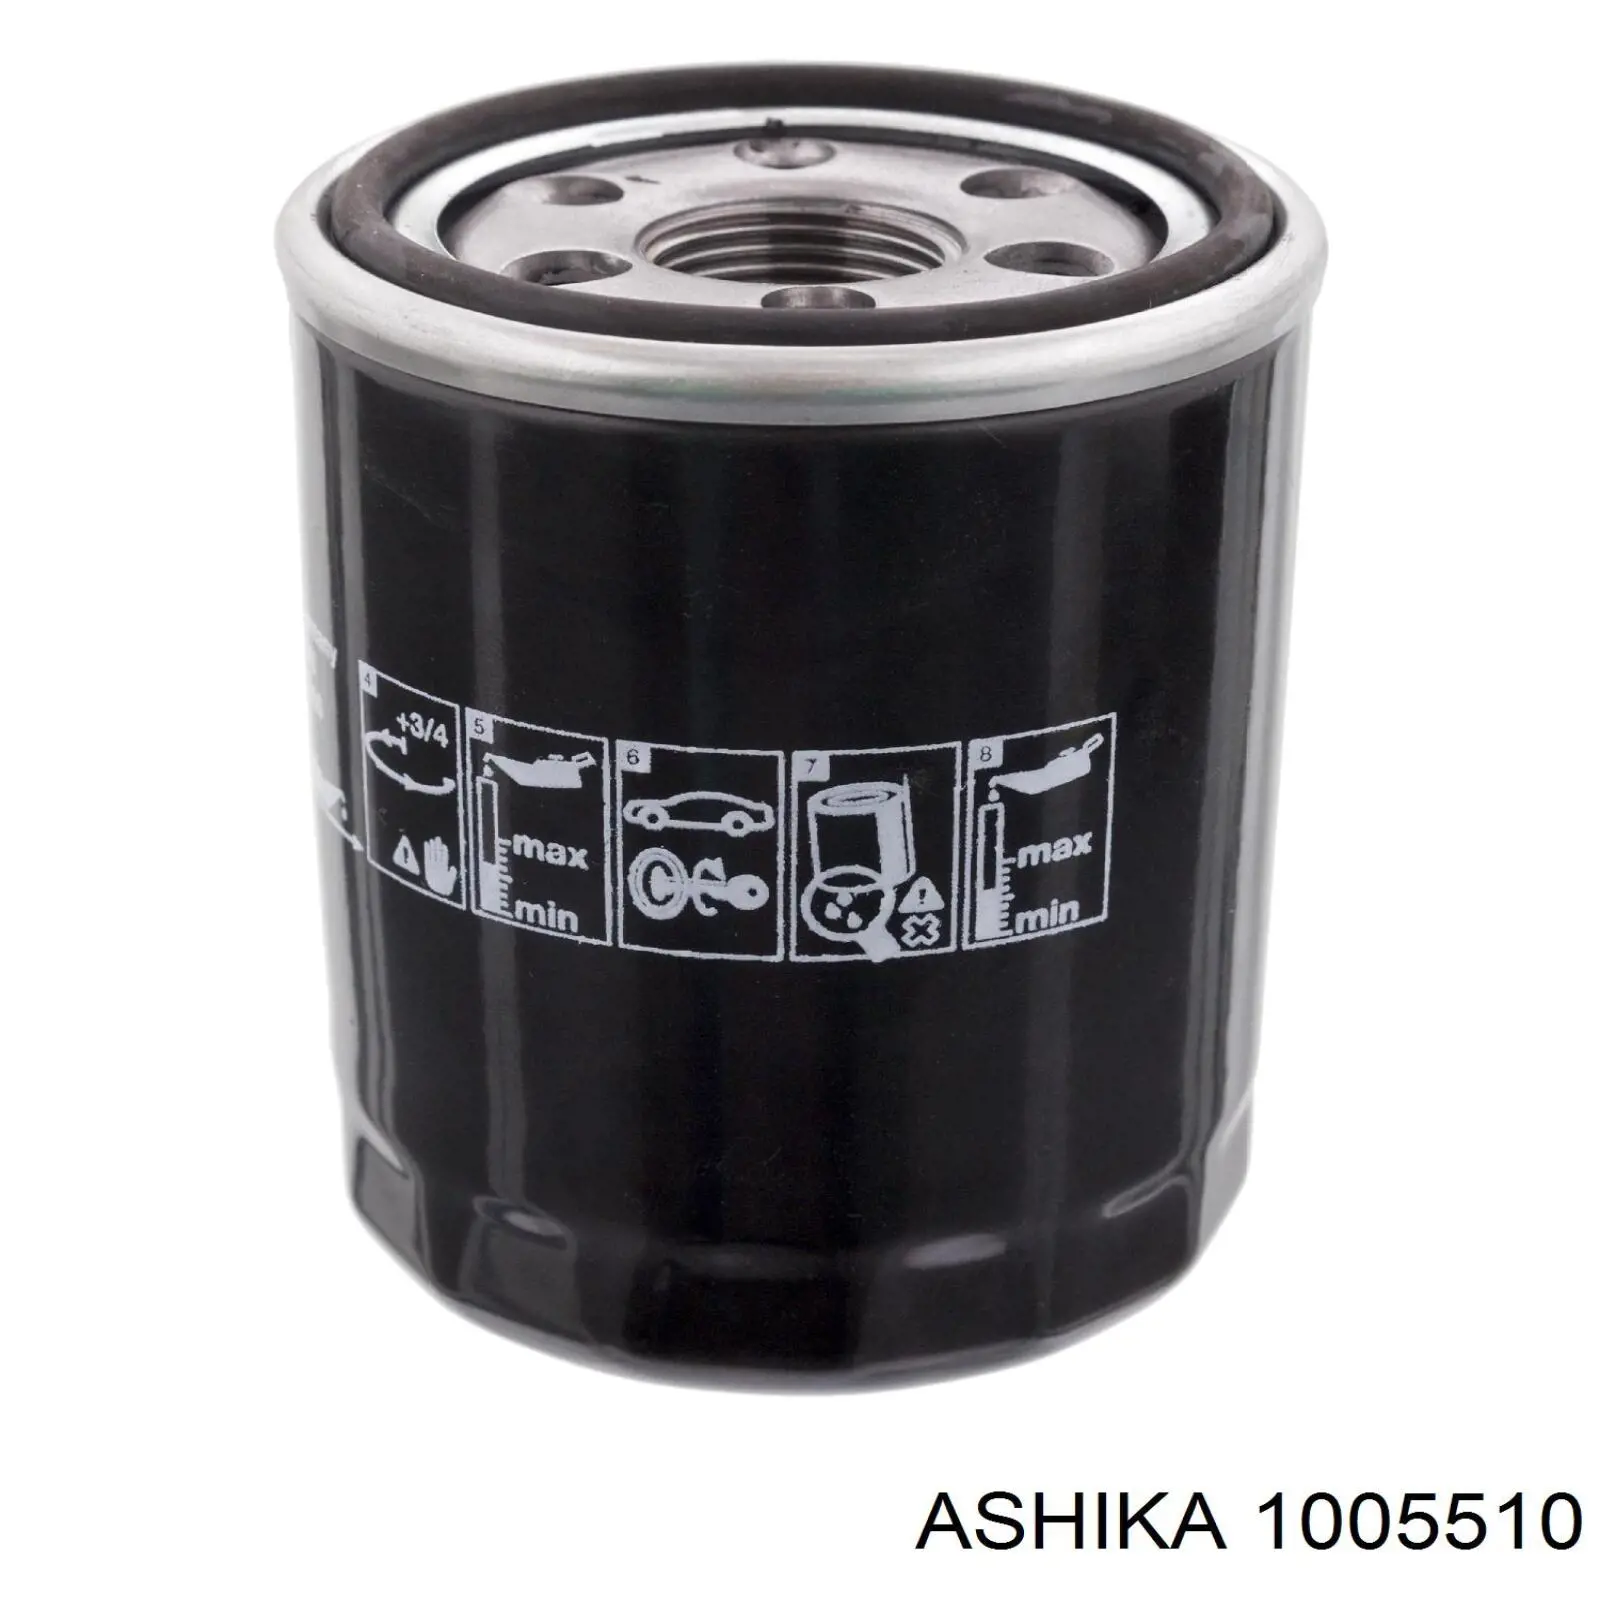 10-05-510 Ashika filtro de aceite